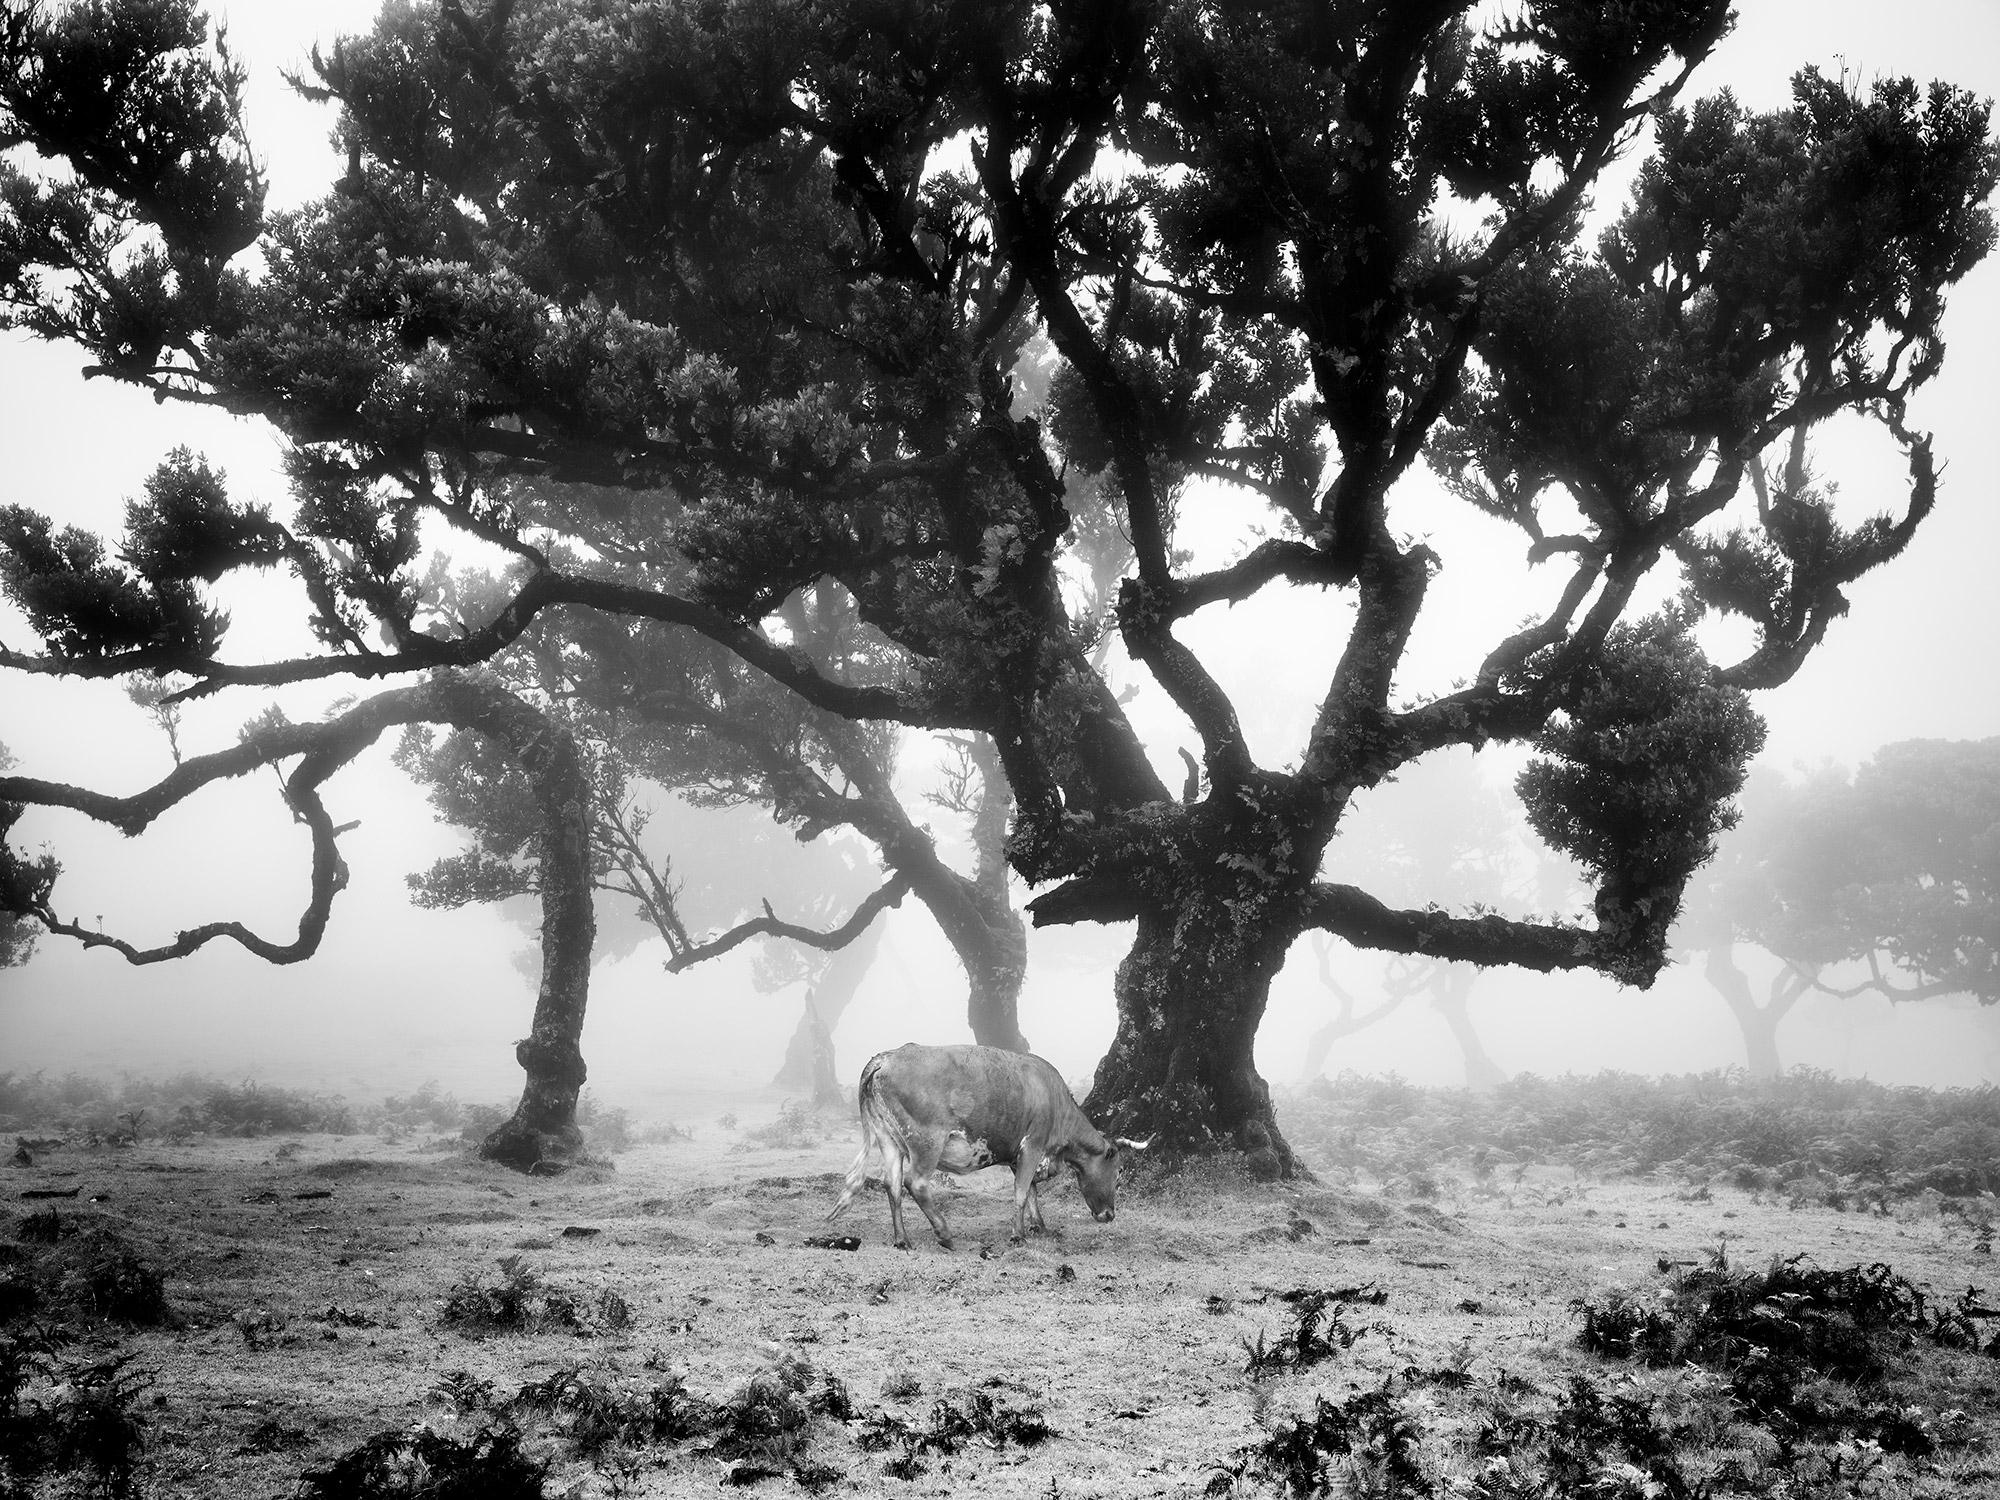 Kühe auf der nebligen Weide, Schwarz-Weiß-Fotografie, Kunstlandschaft